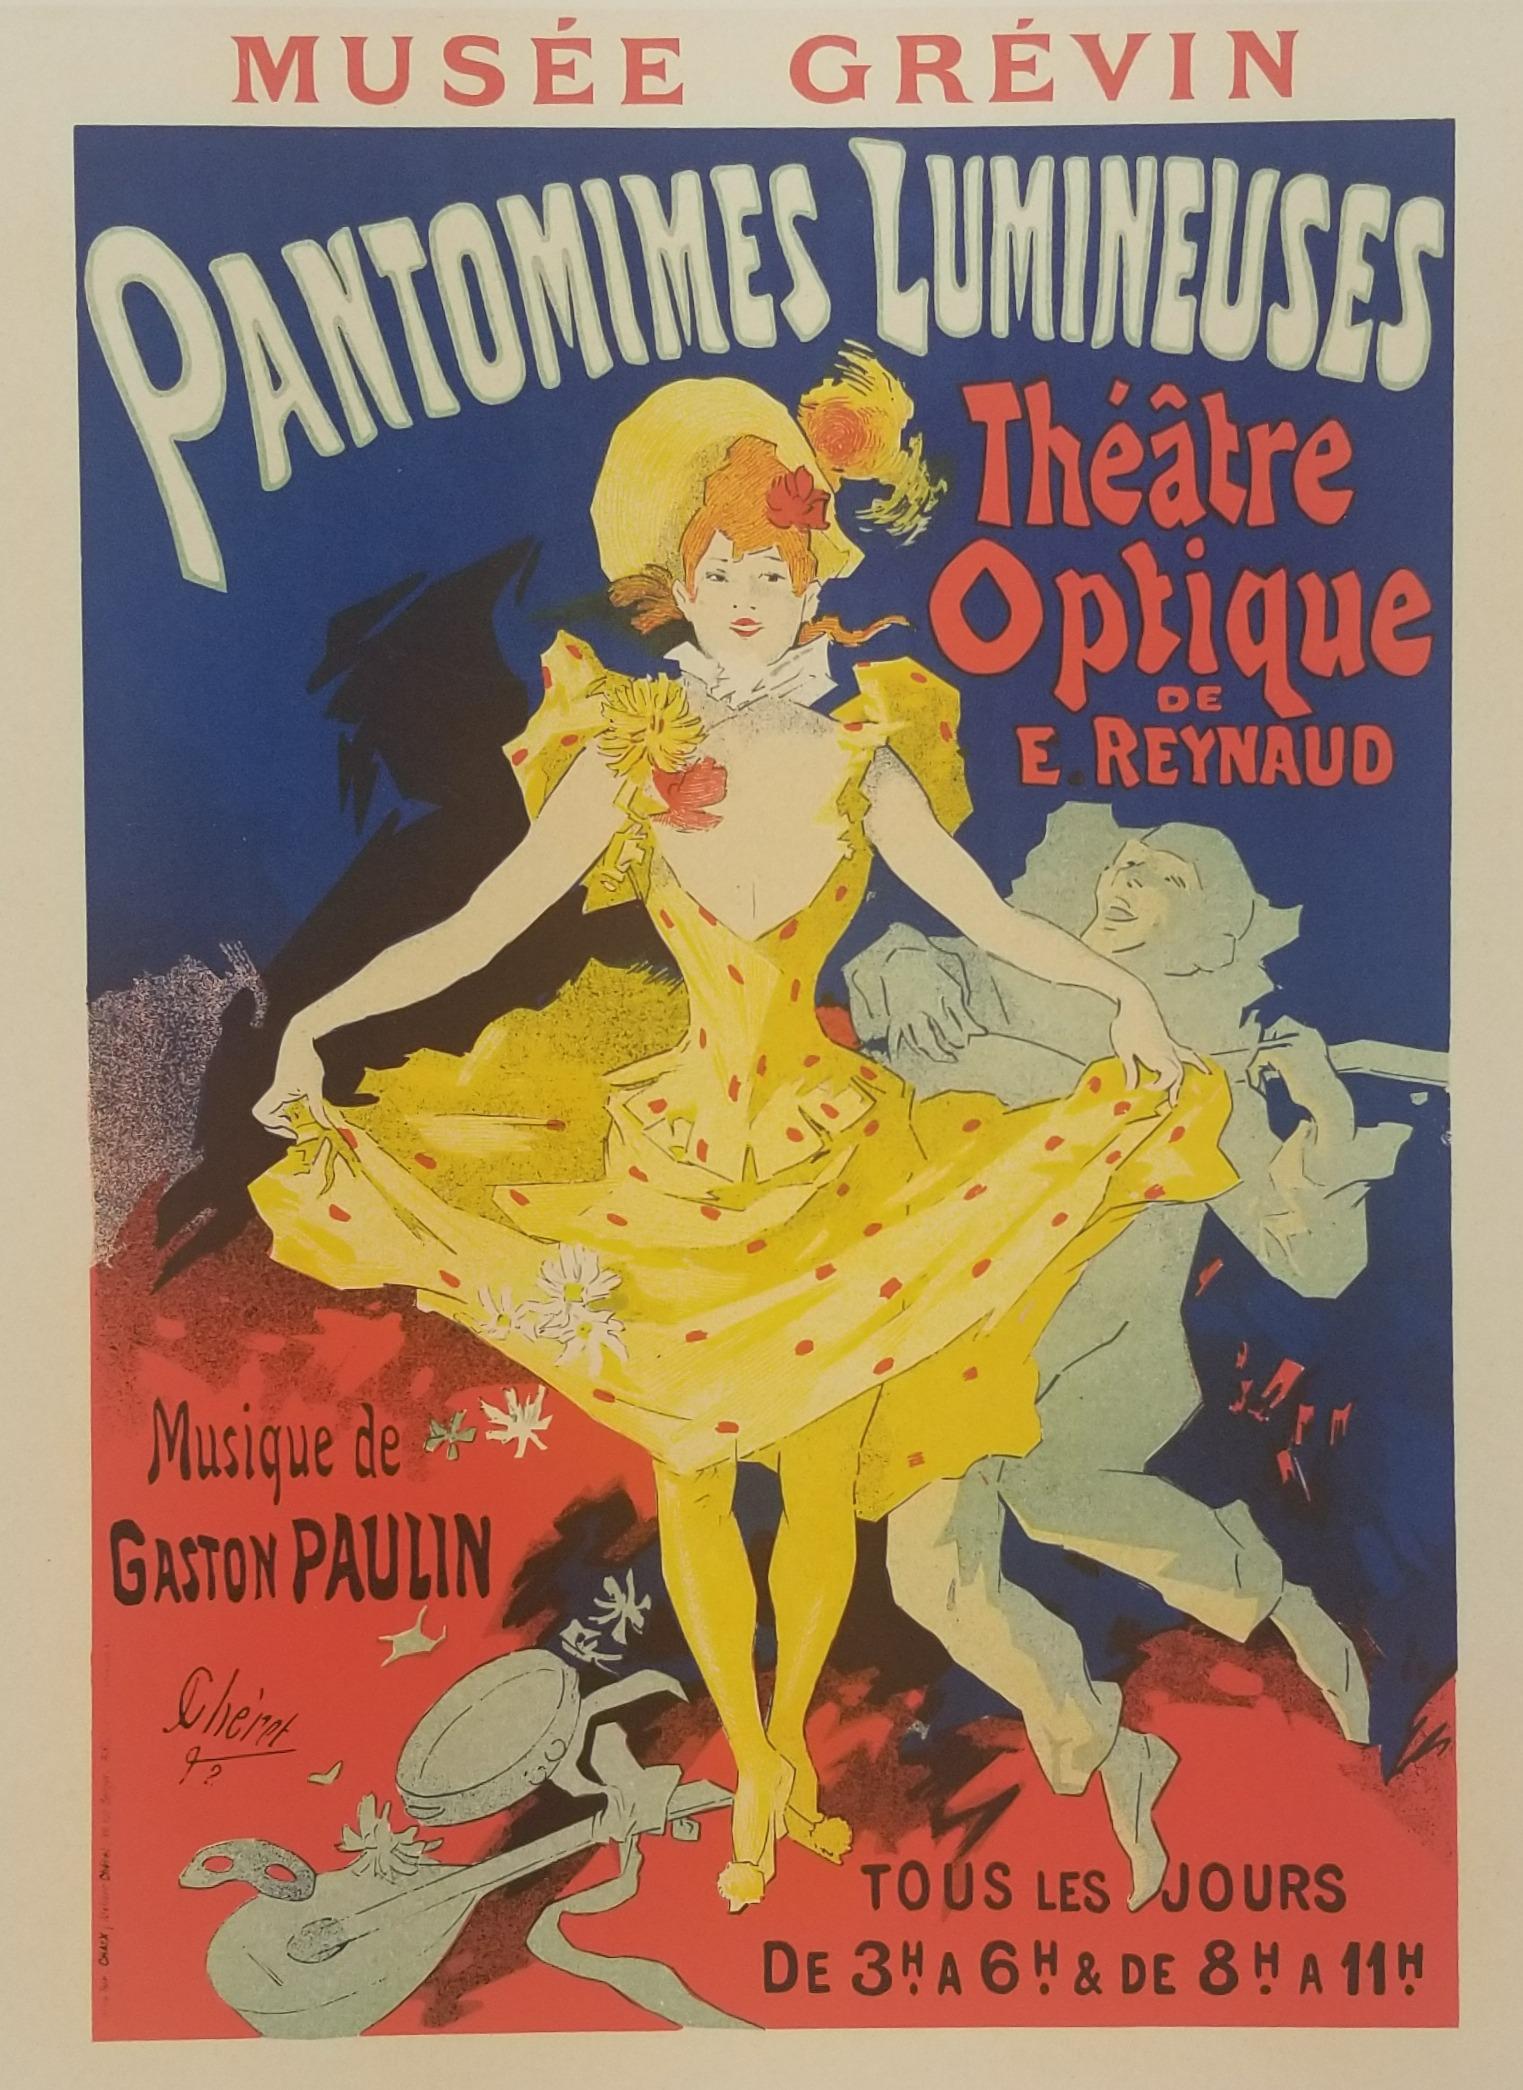 Jules Chéret Print - Pantomines lumineuses